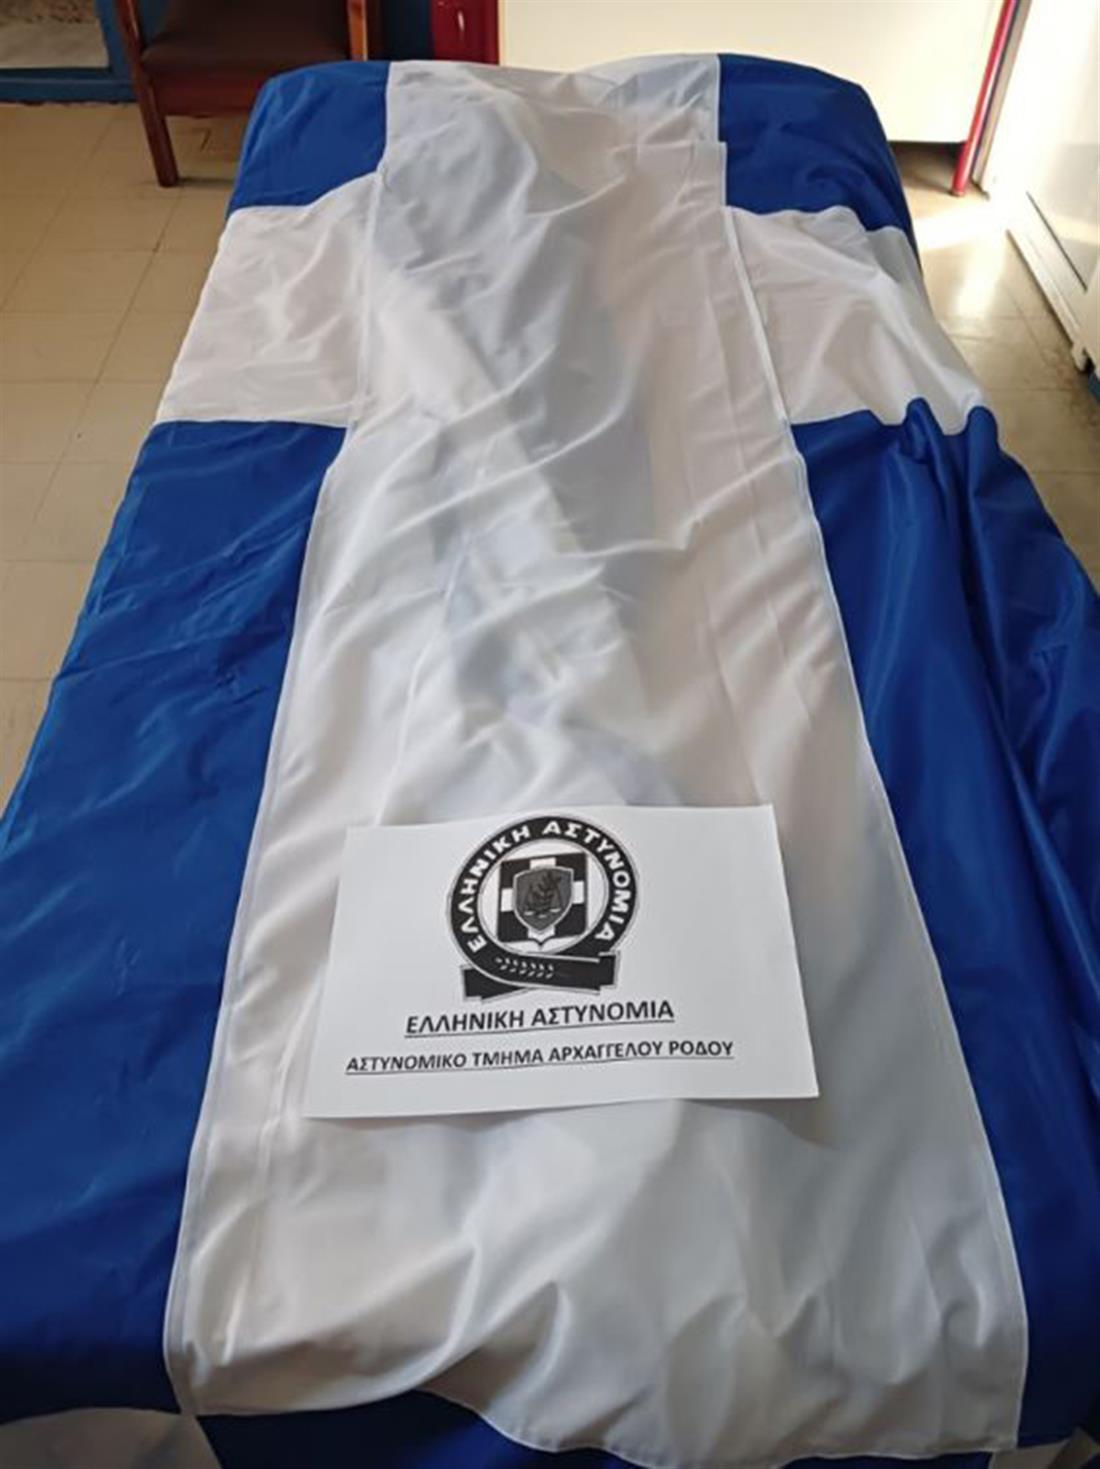 Ρόδος - ελληνική σημαία - Χαράκι